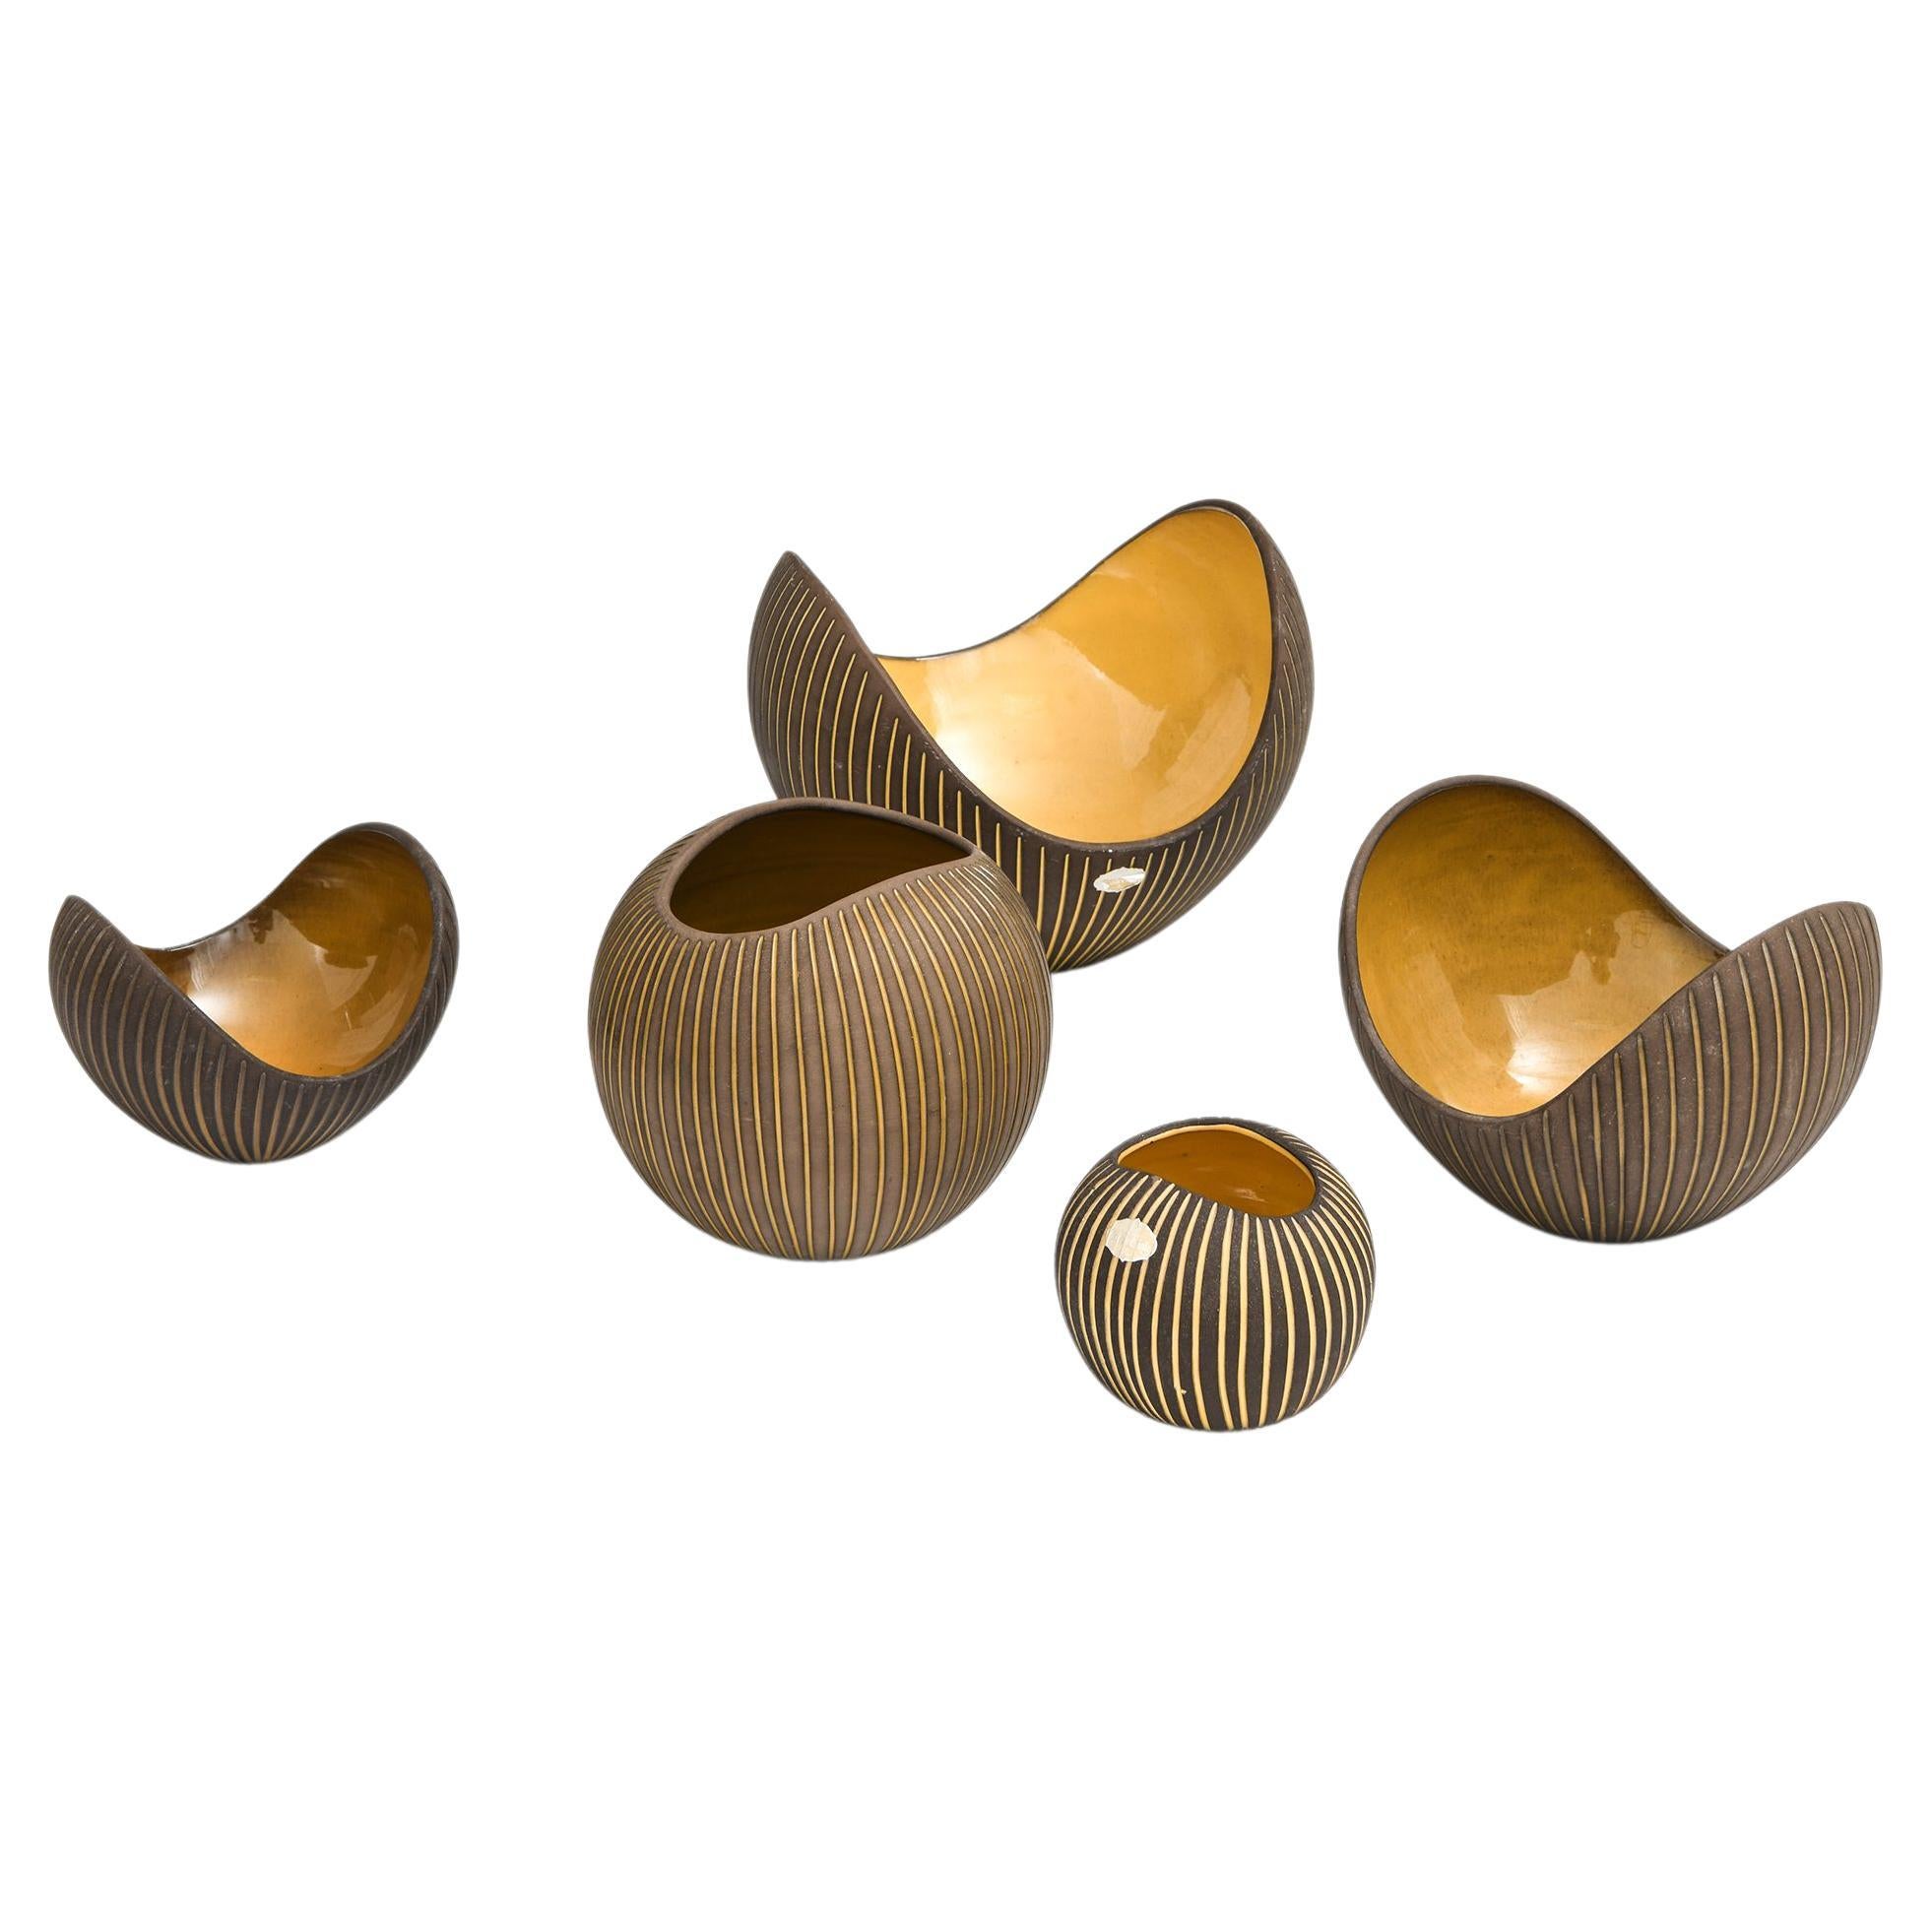 Set of 5 Ceramic Bowls by Hjördis Oldfors, 1950's For Sale